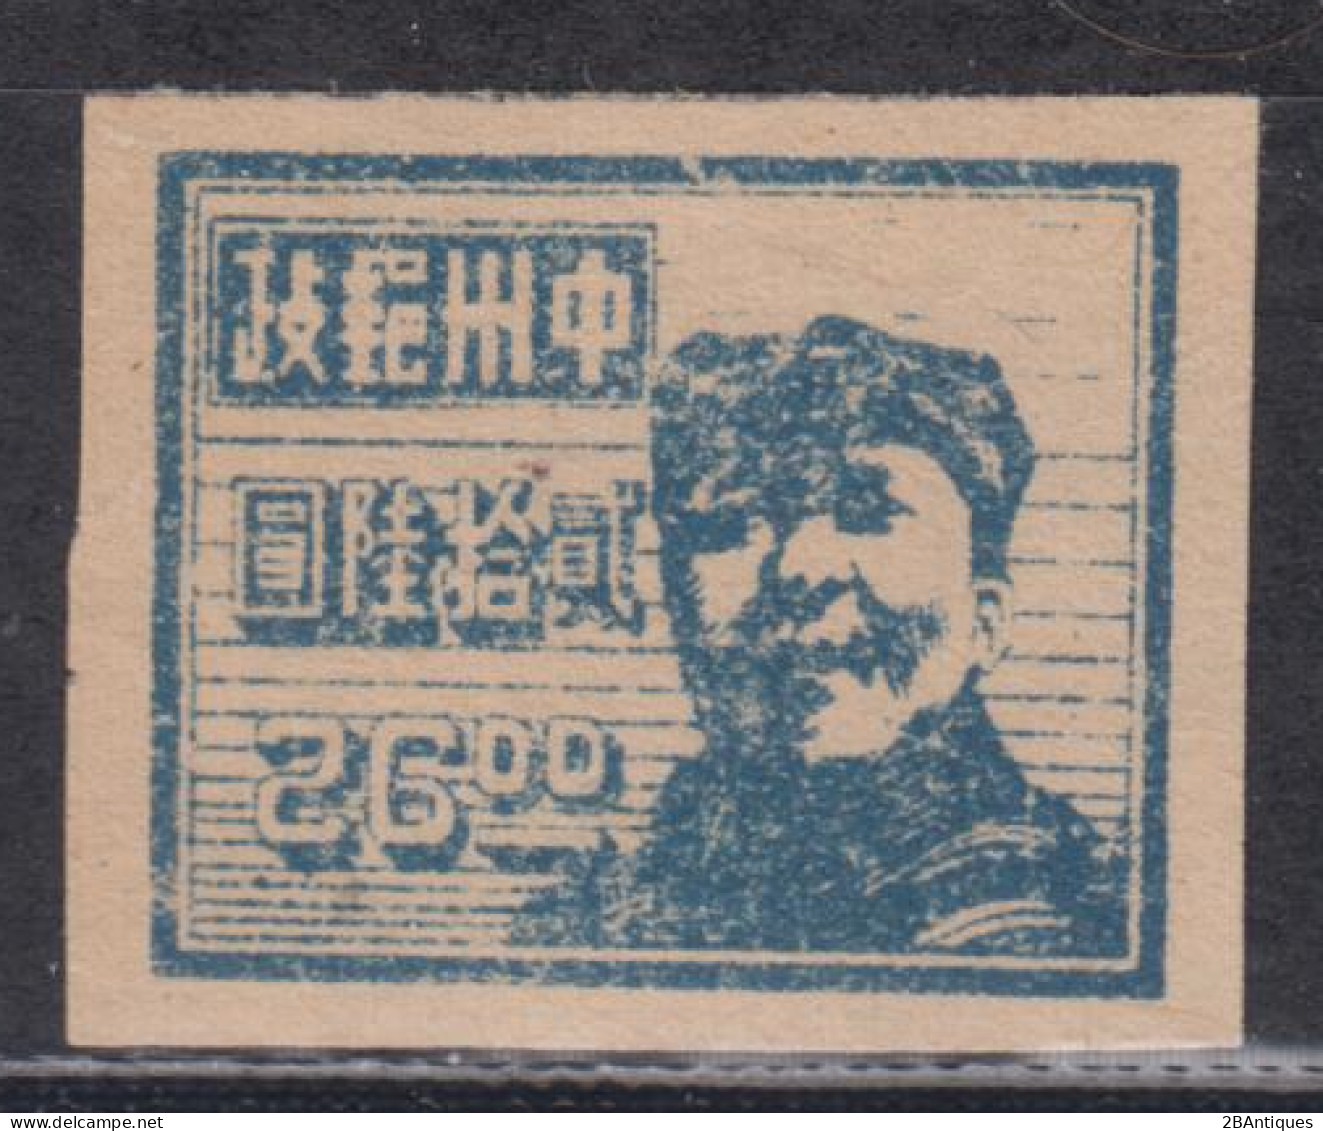 CENTRAL CHINA 1948 - Mao - Central China 1948-49